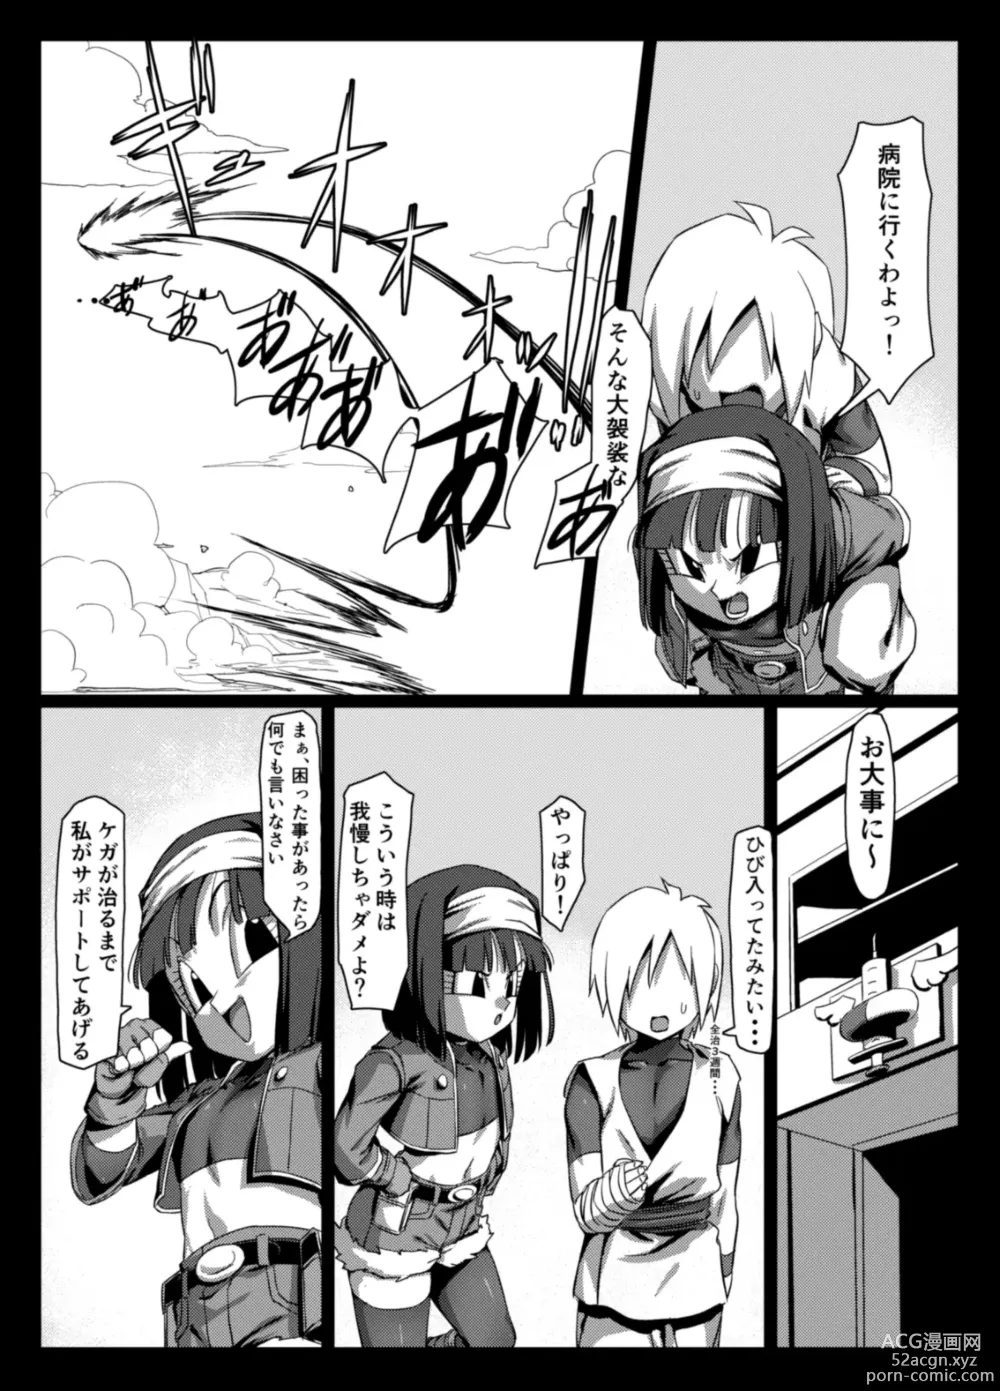 Page 7 of doujinshi Zeno ni omakase!